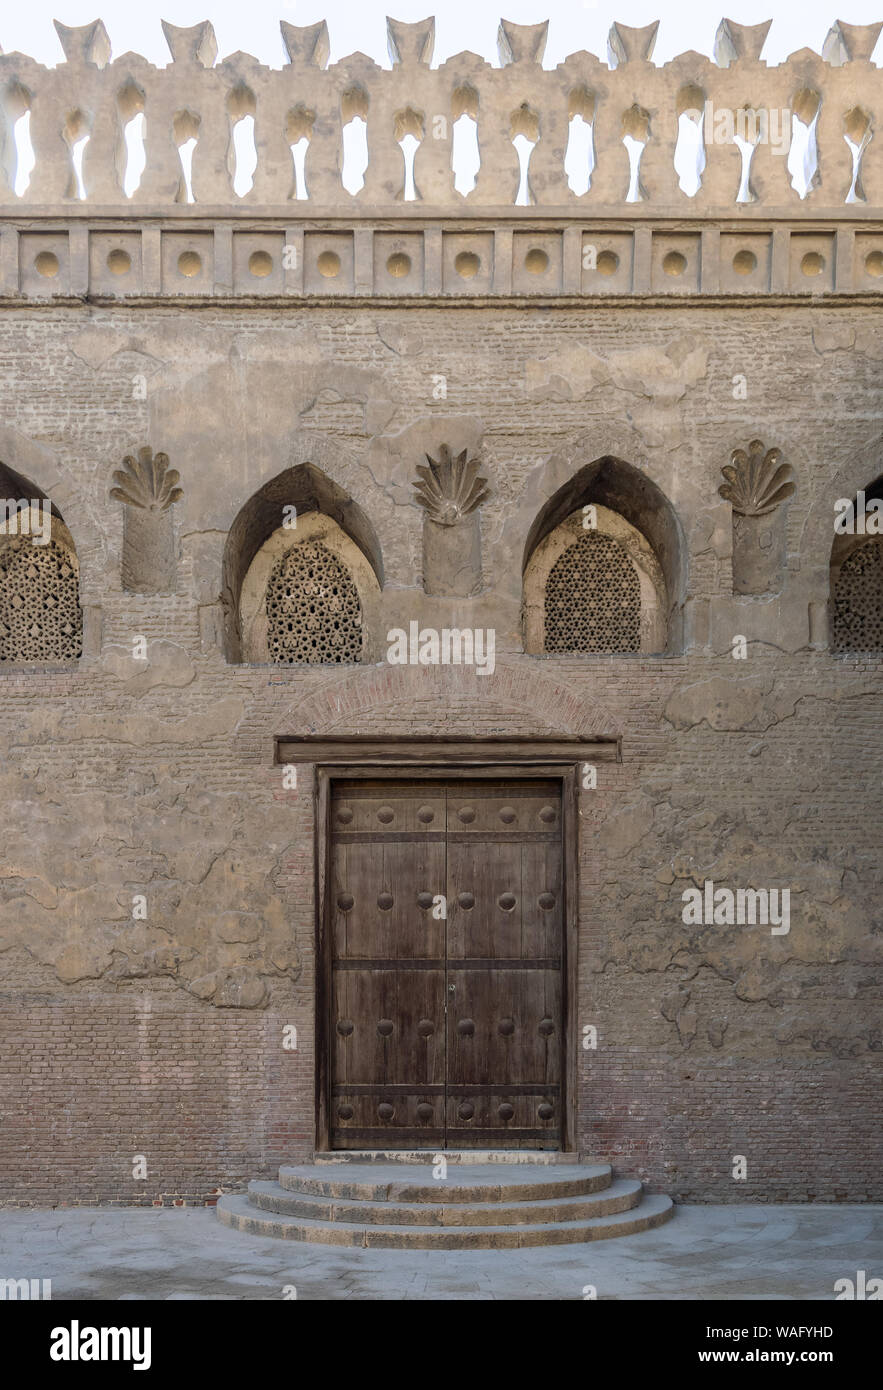 Porte en bois vieilli, voûté surmonté perforé en stuc fenêtre ornée avec  des motifs floraux, et trois étapes sur mur de briques en pierre, la  mosquée Ibn Tulun, Le Caire, Egypte Photo